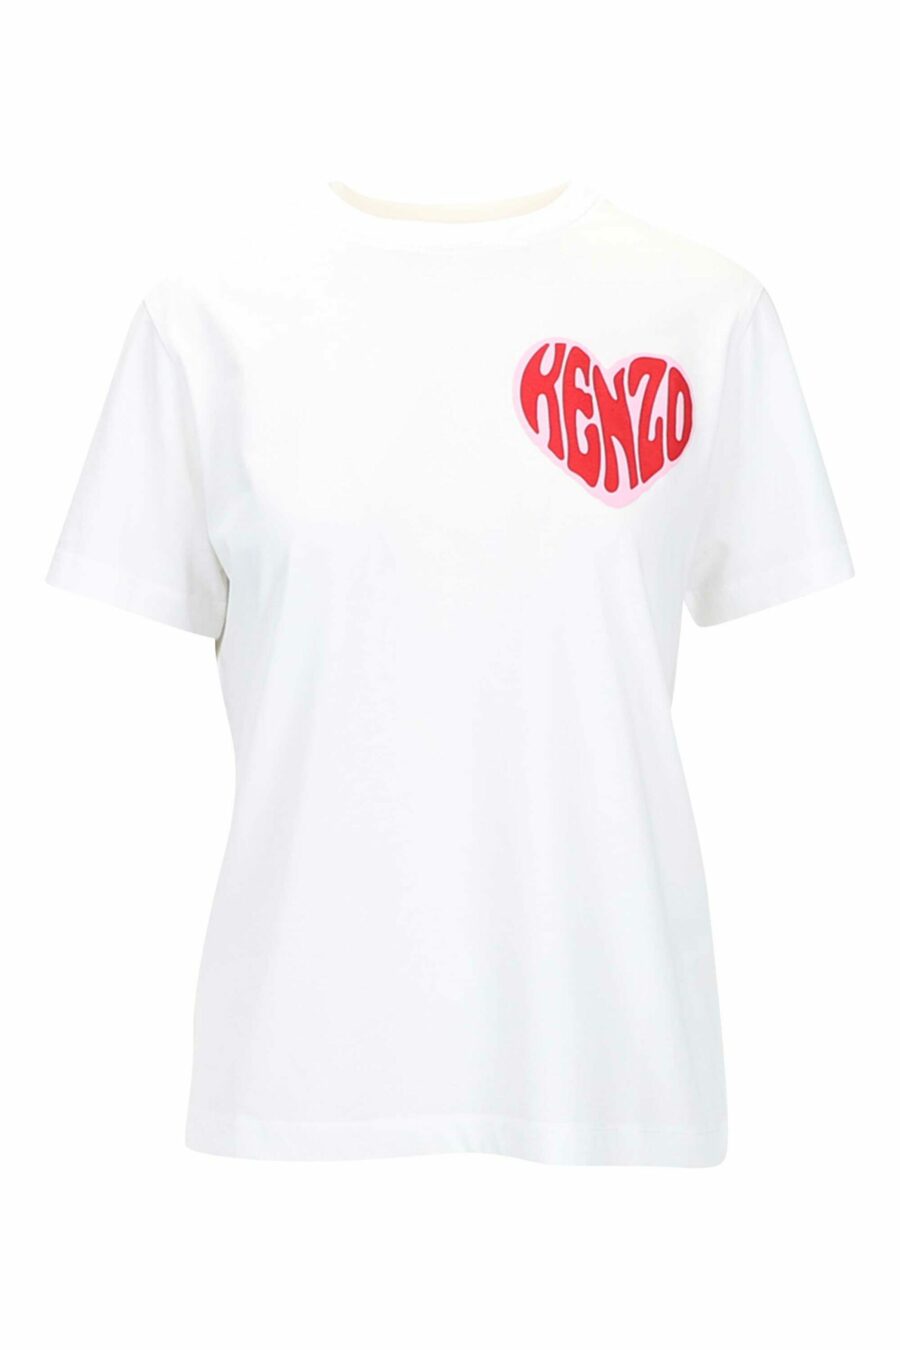 T-shirt branca com o logótipo do mini coração - 3612230517578